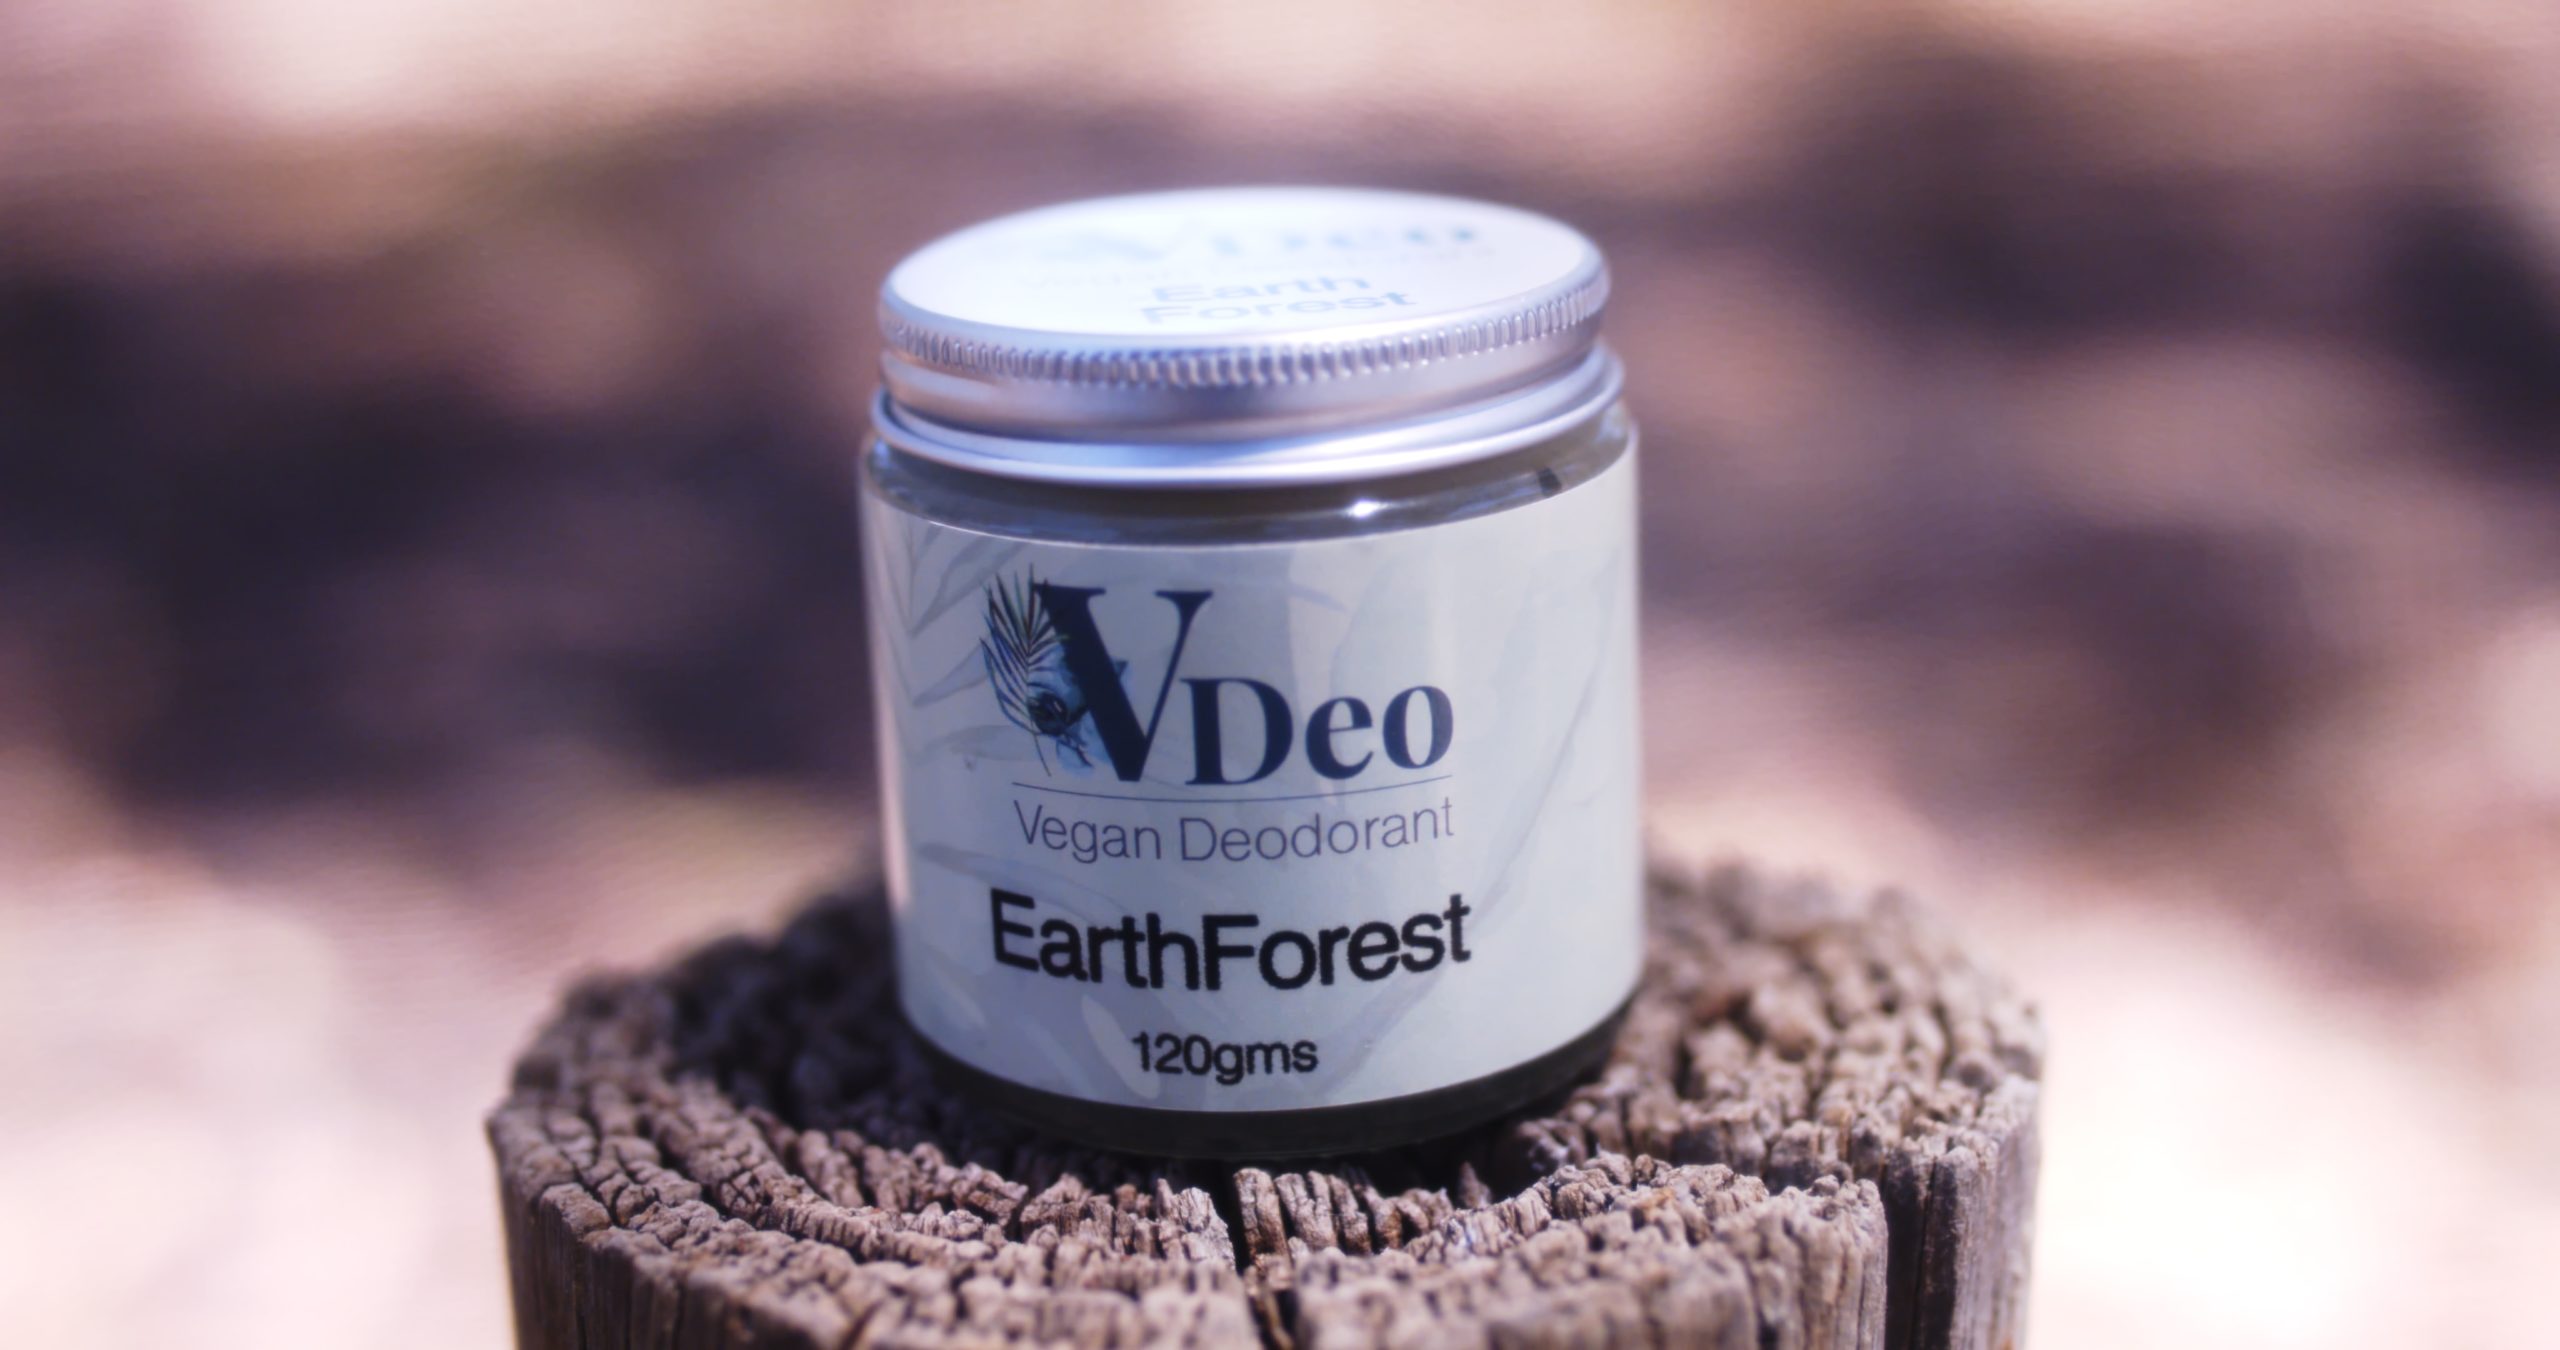 VDeo Vegan Deodorant EarthForest 120g